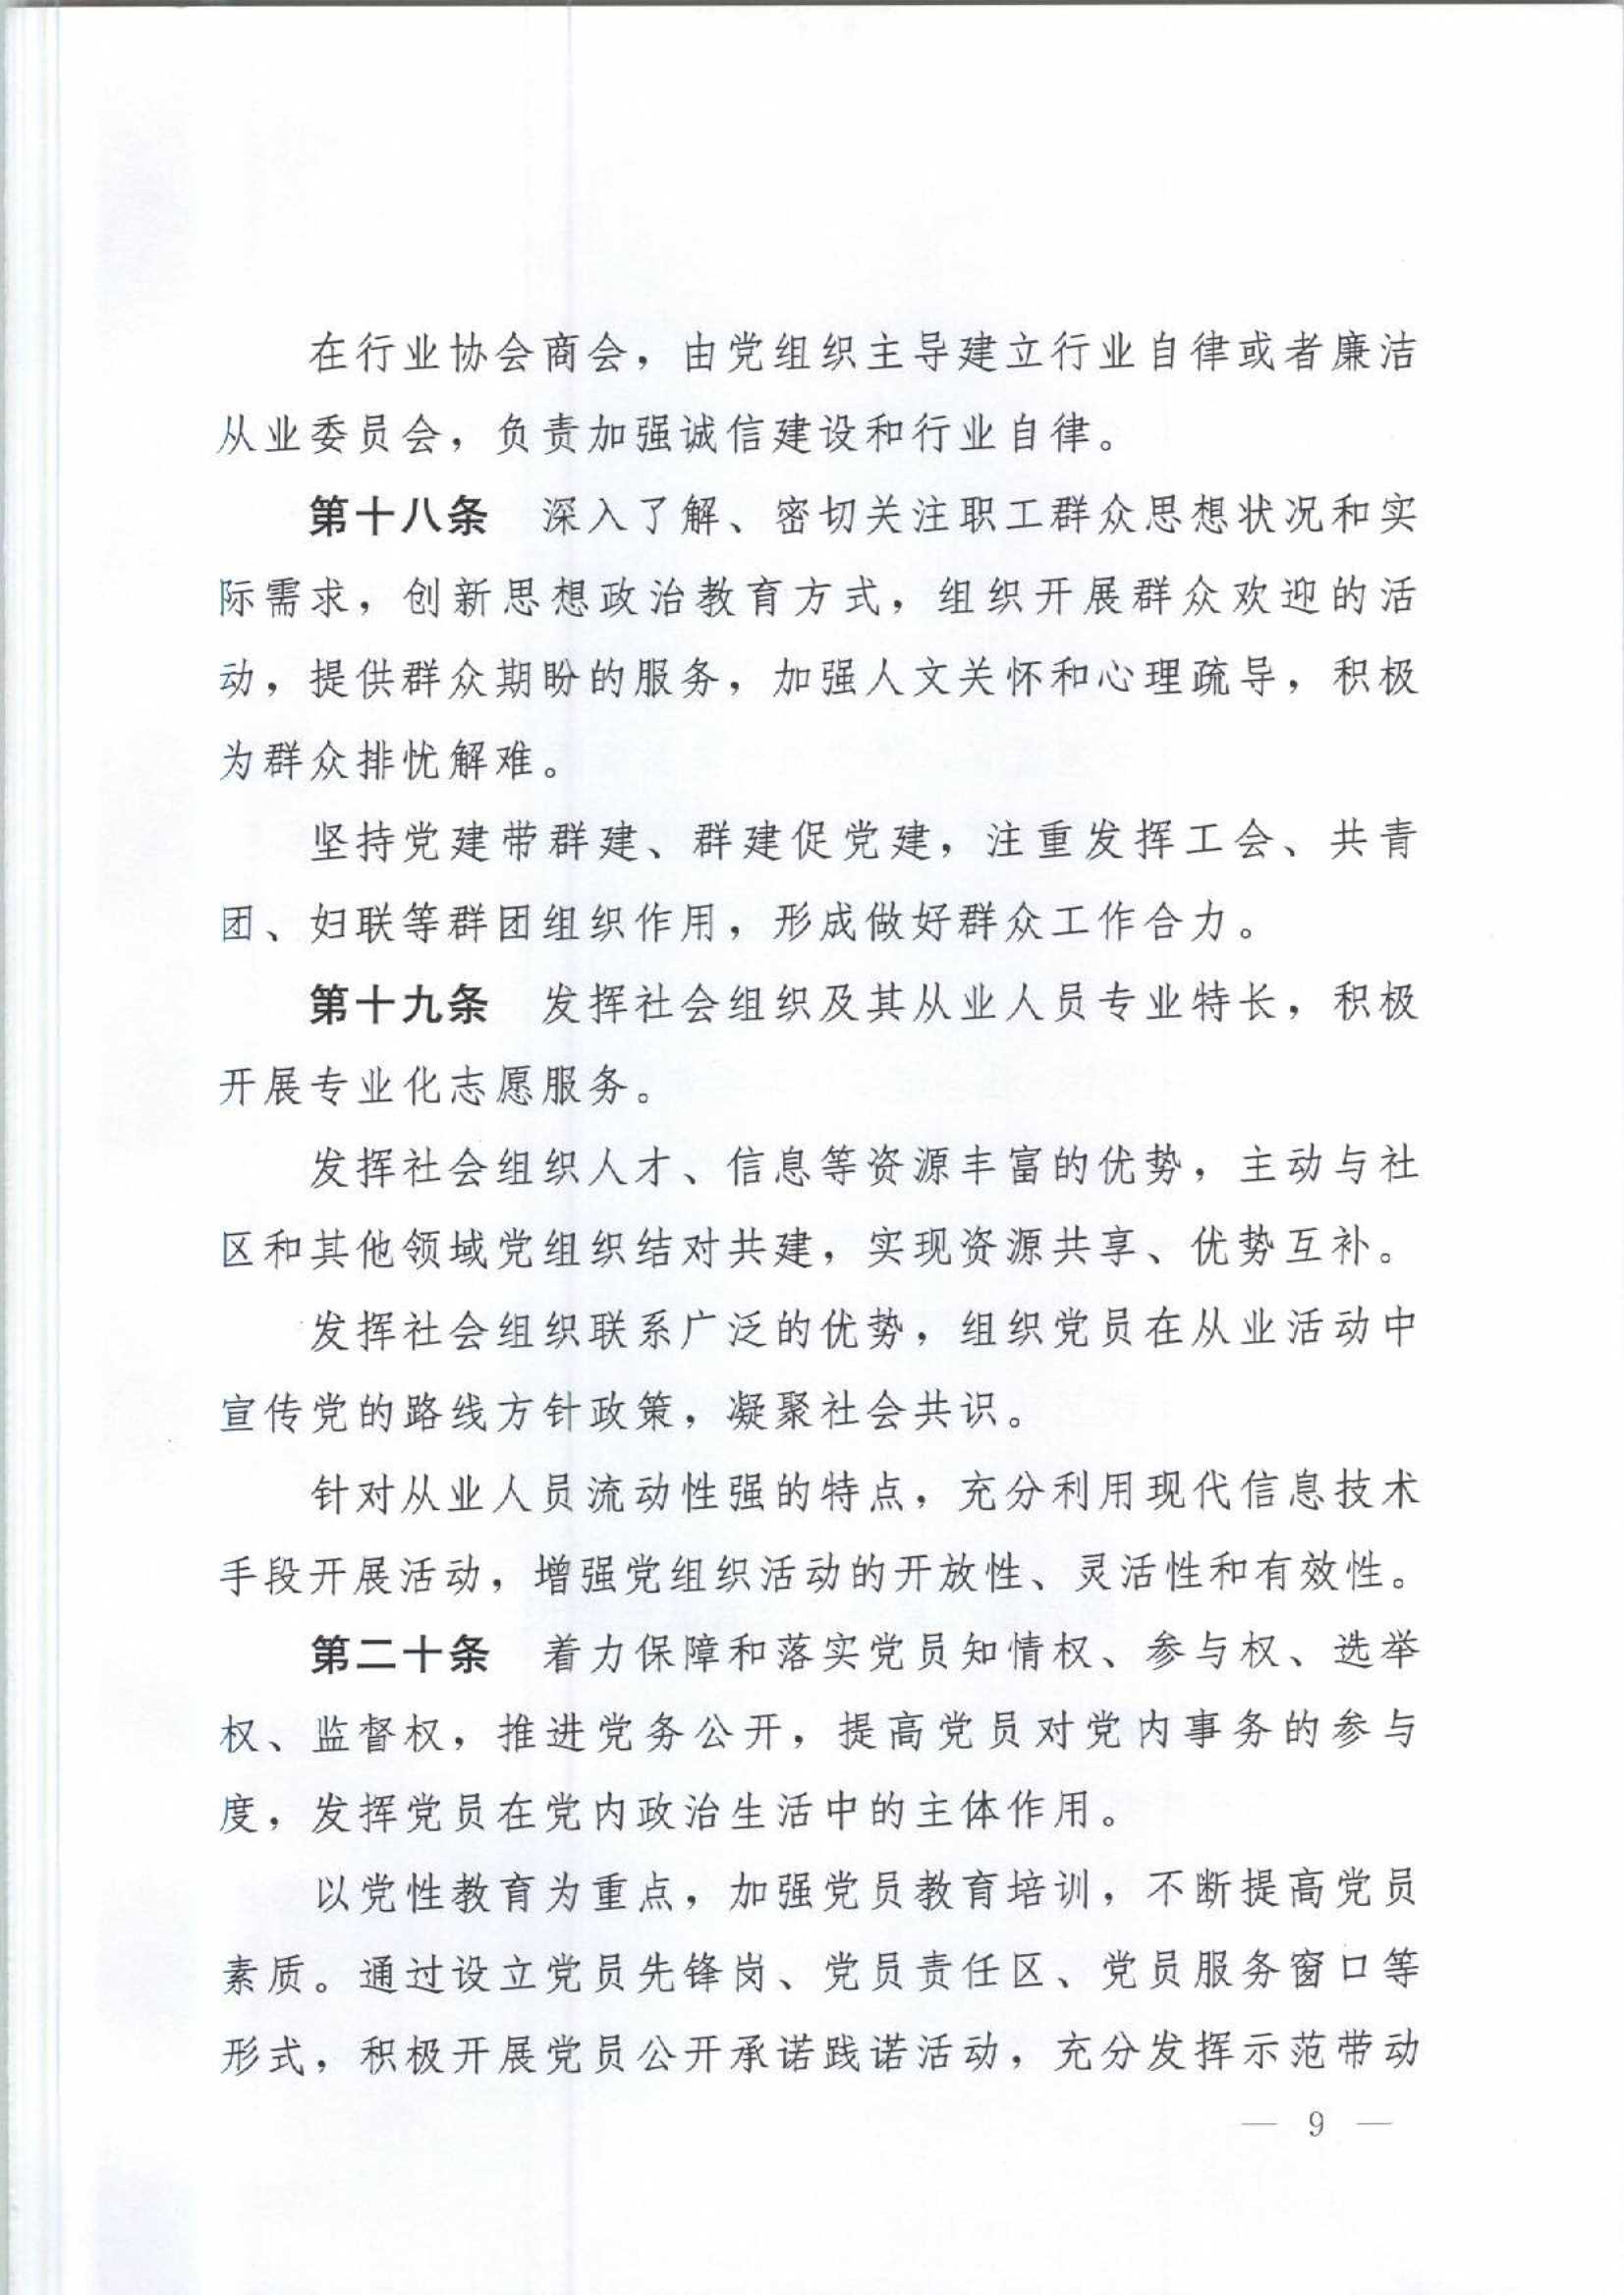 4.深圳市社会组织党的建设工作规定_9.Jpeg